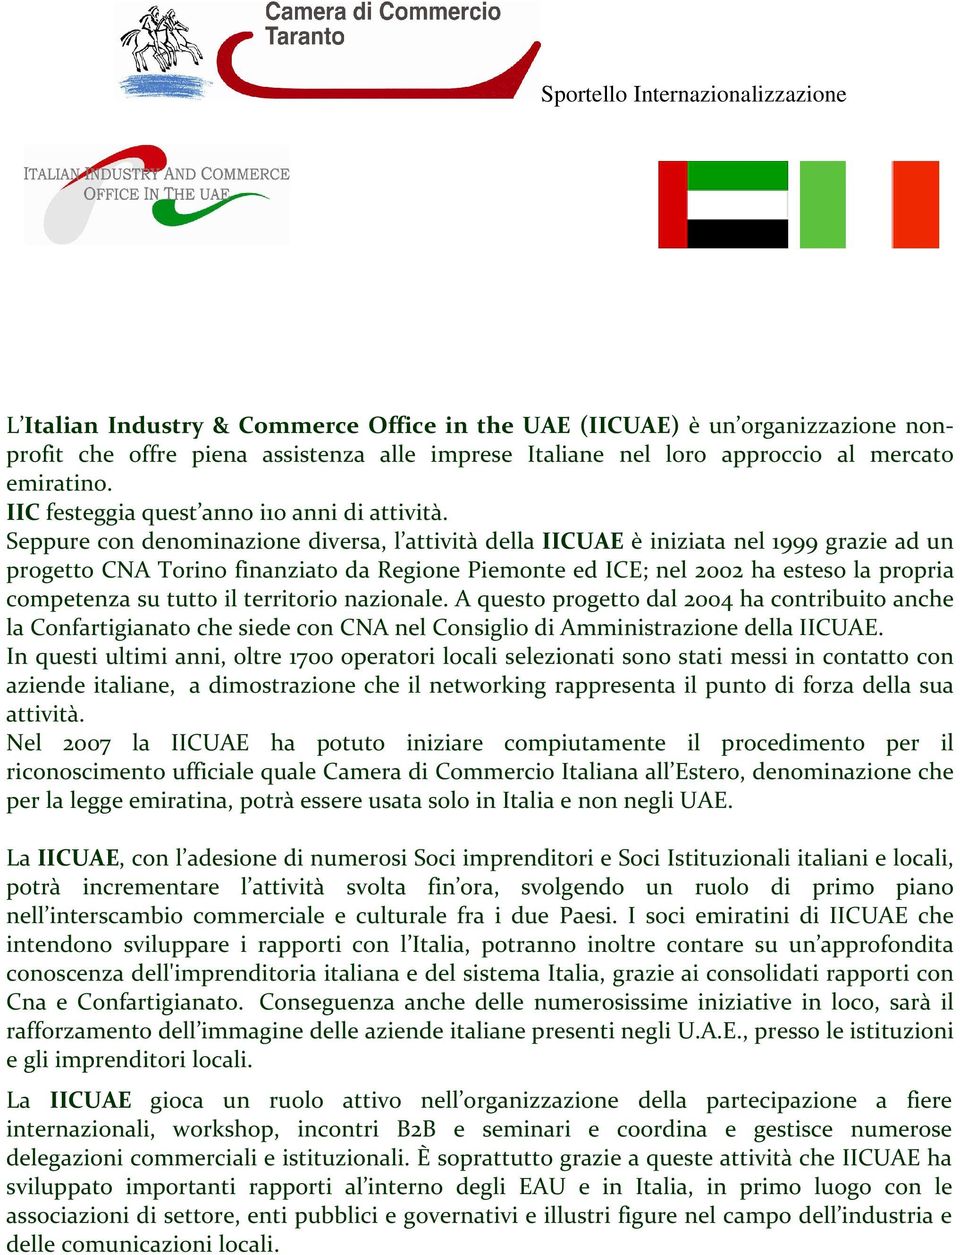 Seppure con denominazione diversa, l attività della IICUAE è iniziata nel 1999 grazie ad un progetto CNA Torino finanziato da Regione Piemonte ed ICE; nel 2002 ha esteso la propria competenza su